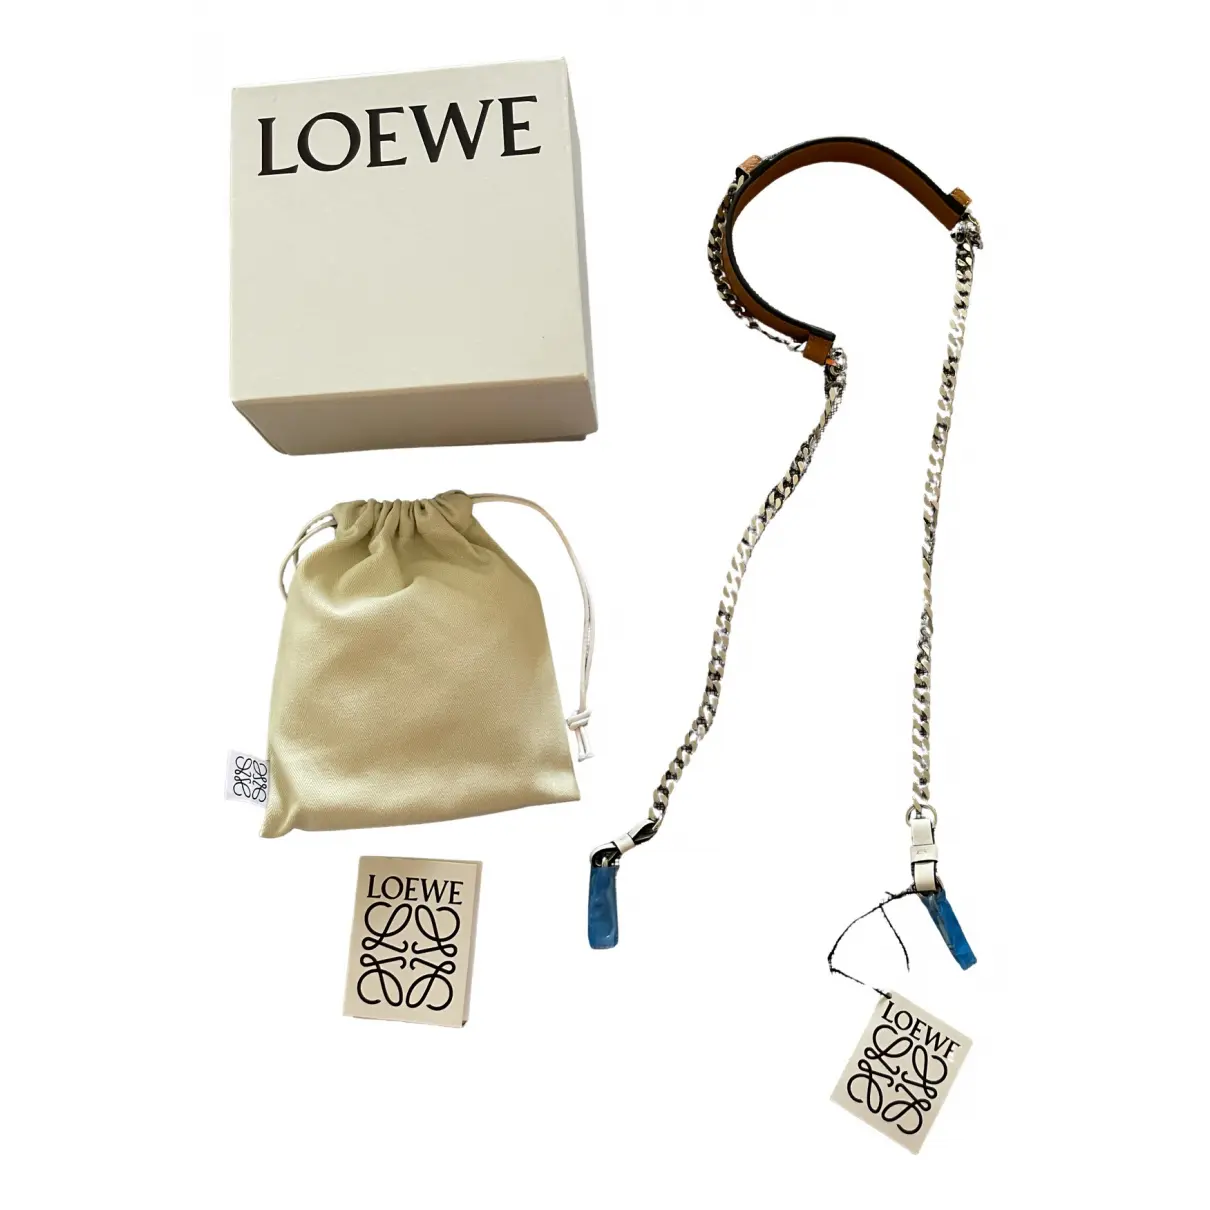 Buy Loewe Leather purse online